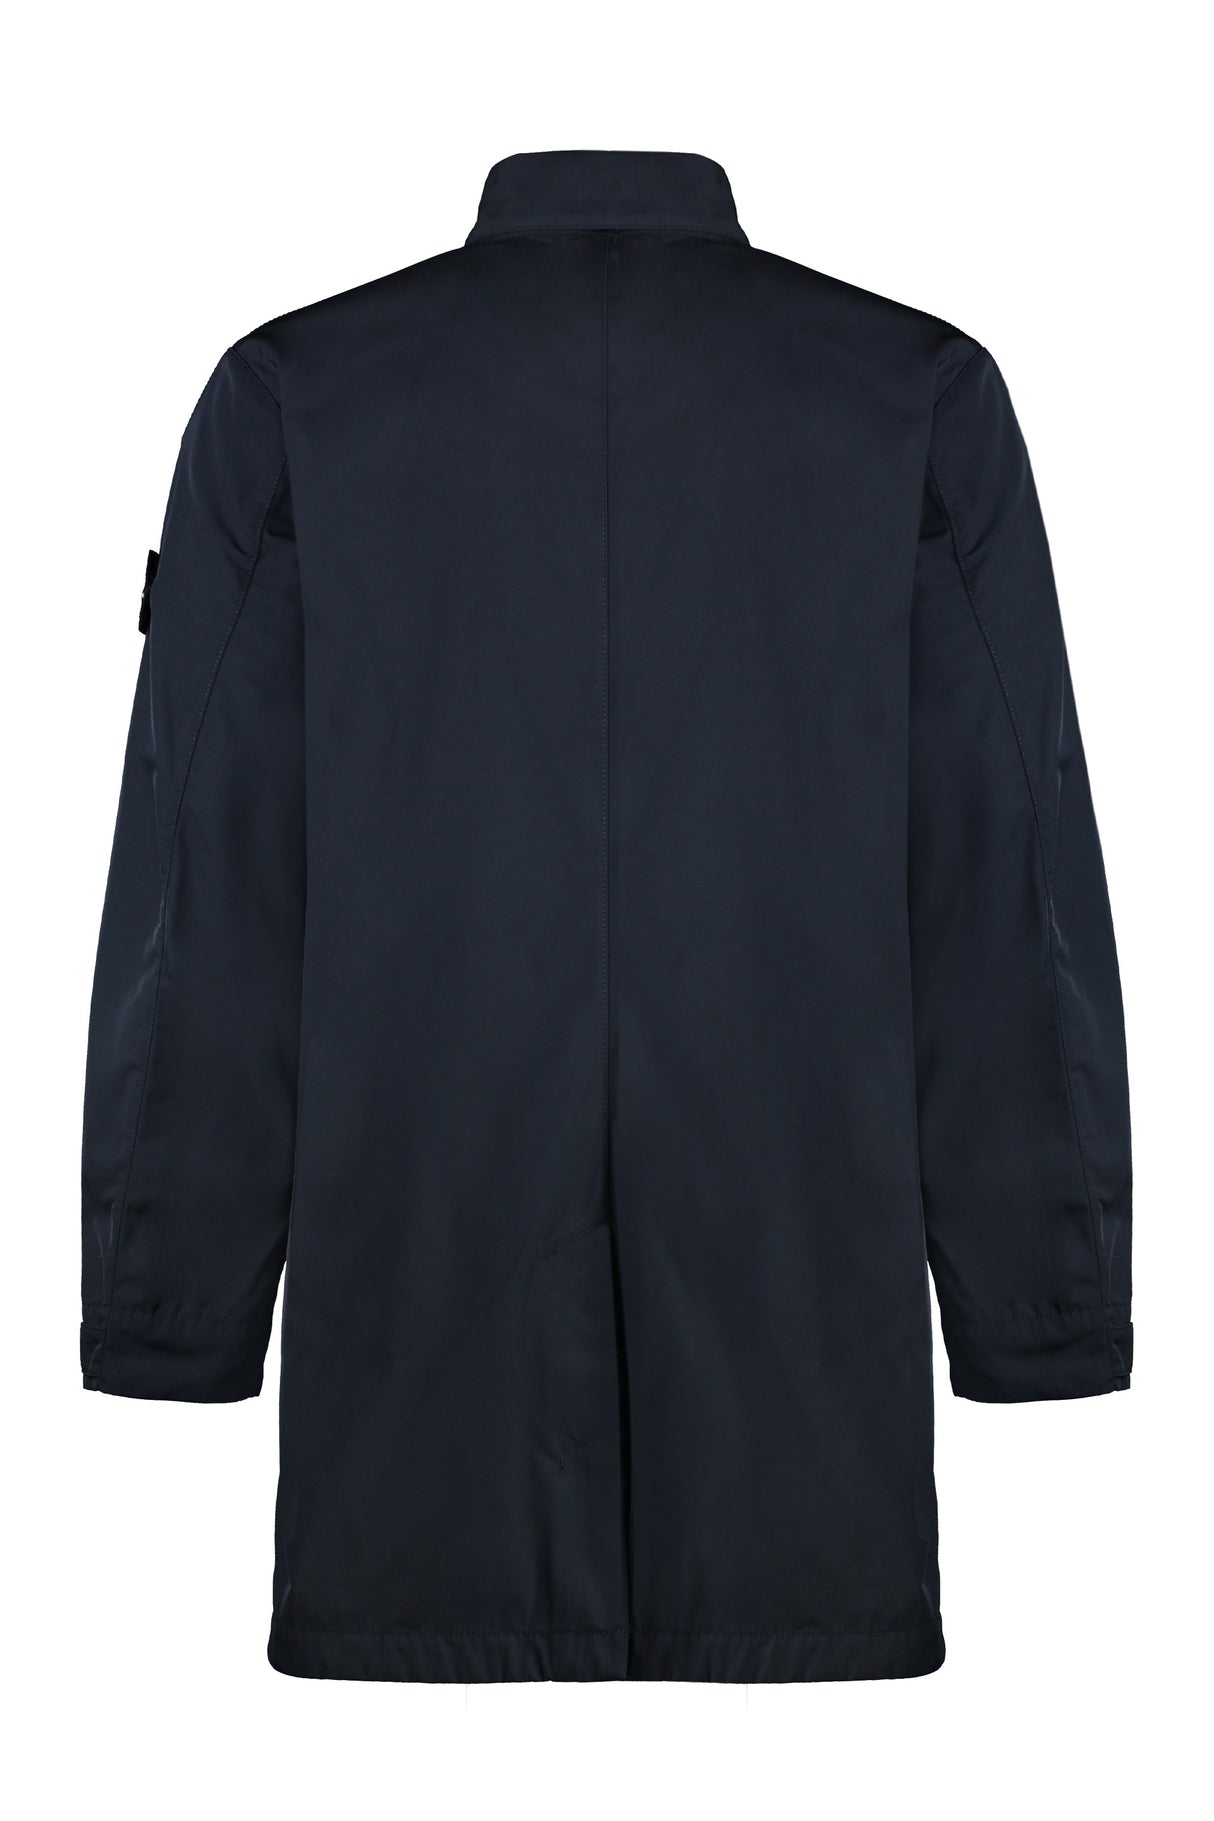 男士防风经典蓝色外套配可拆卸LOGO补丁与可调式袖口